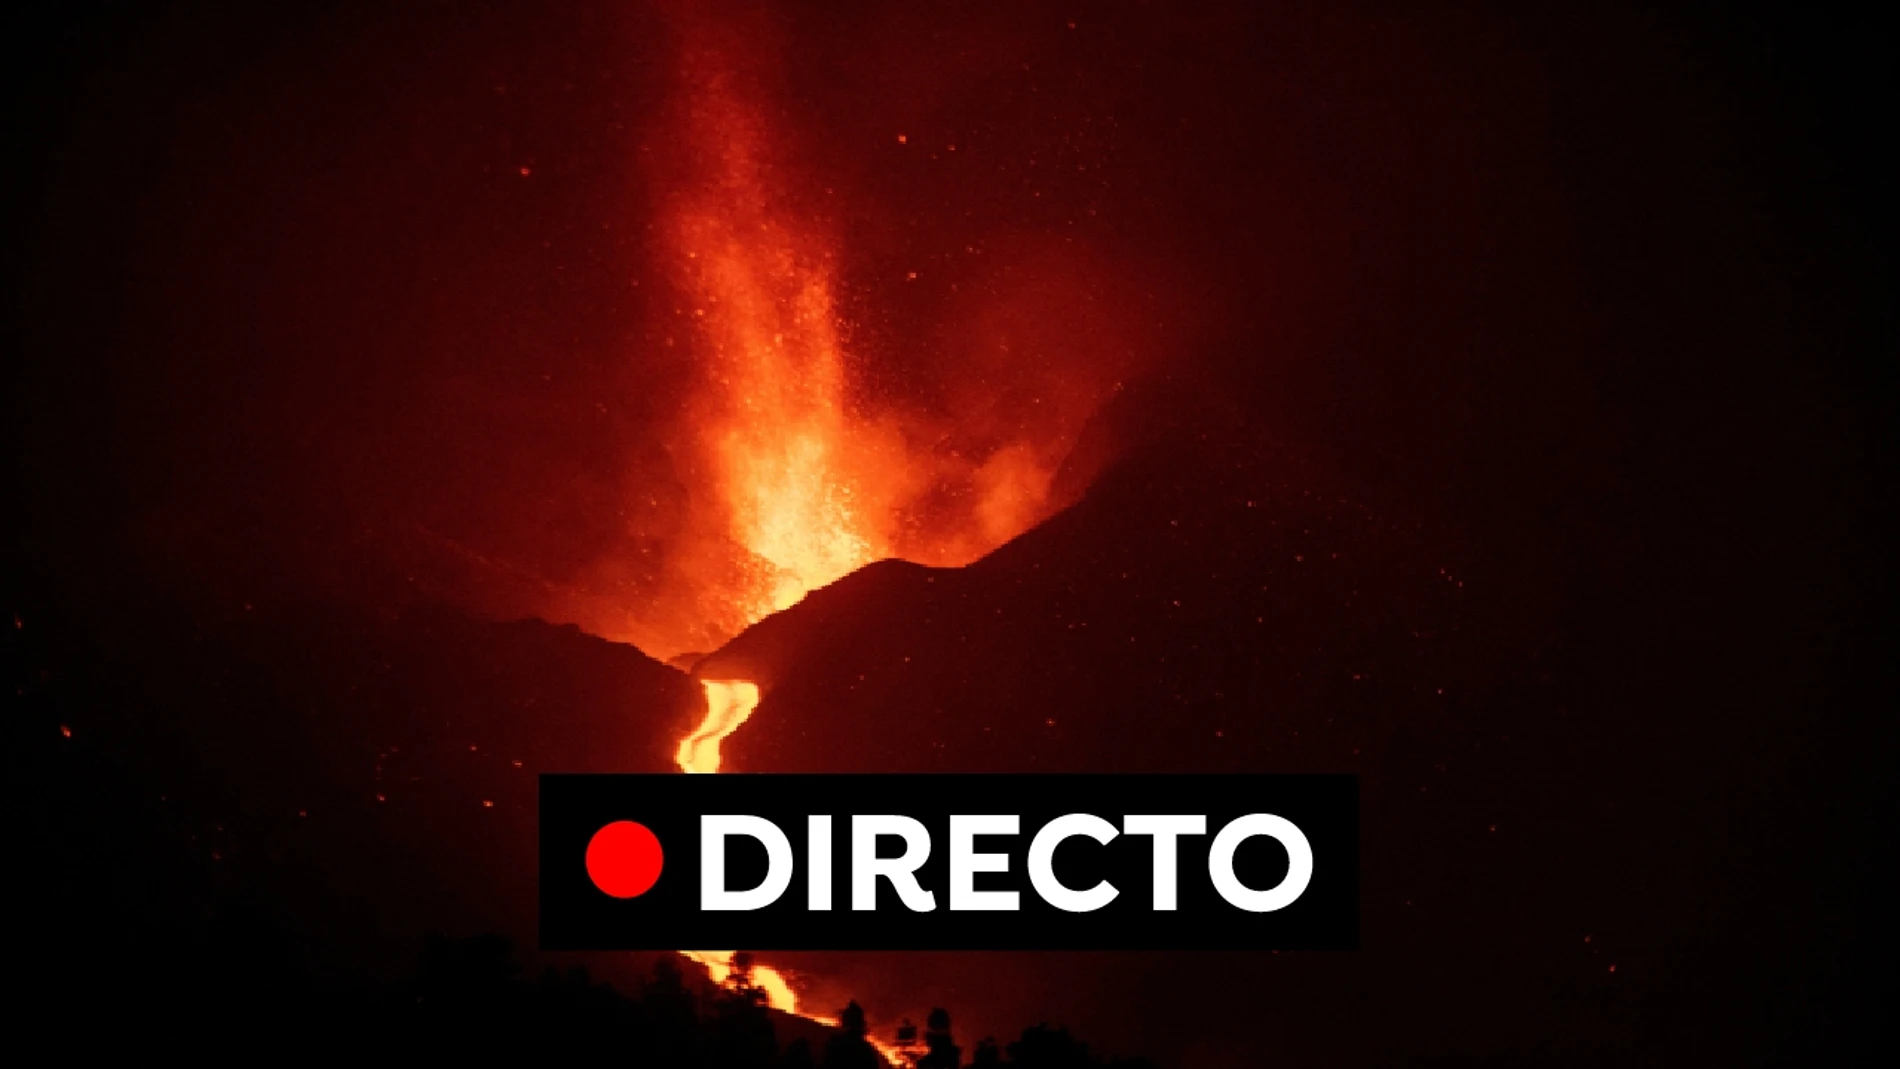 Última hora volcán La Palma: nuevas coladas de lava amenazan La Laguna y preocupa la calidad del aire, en directo